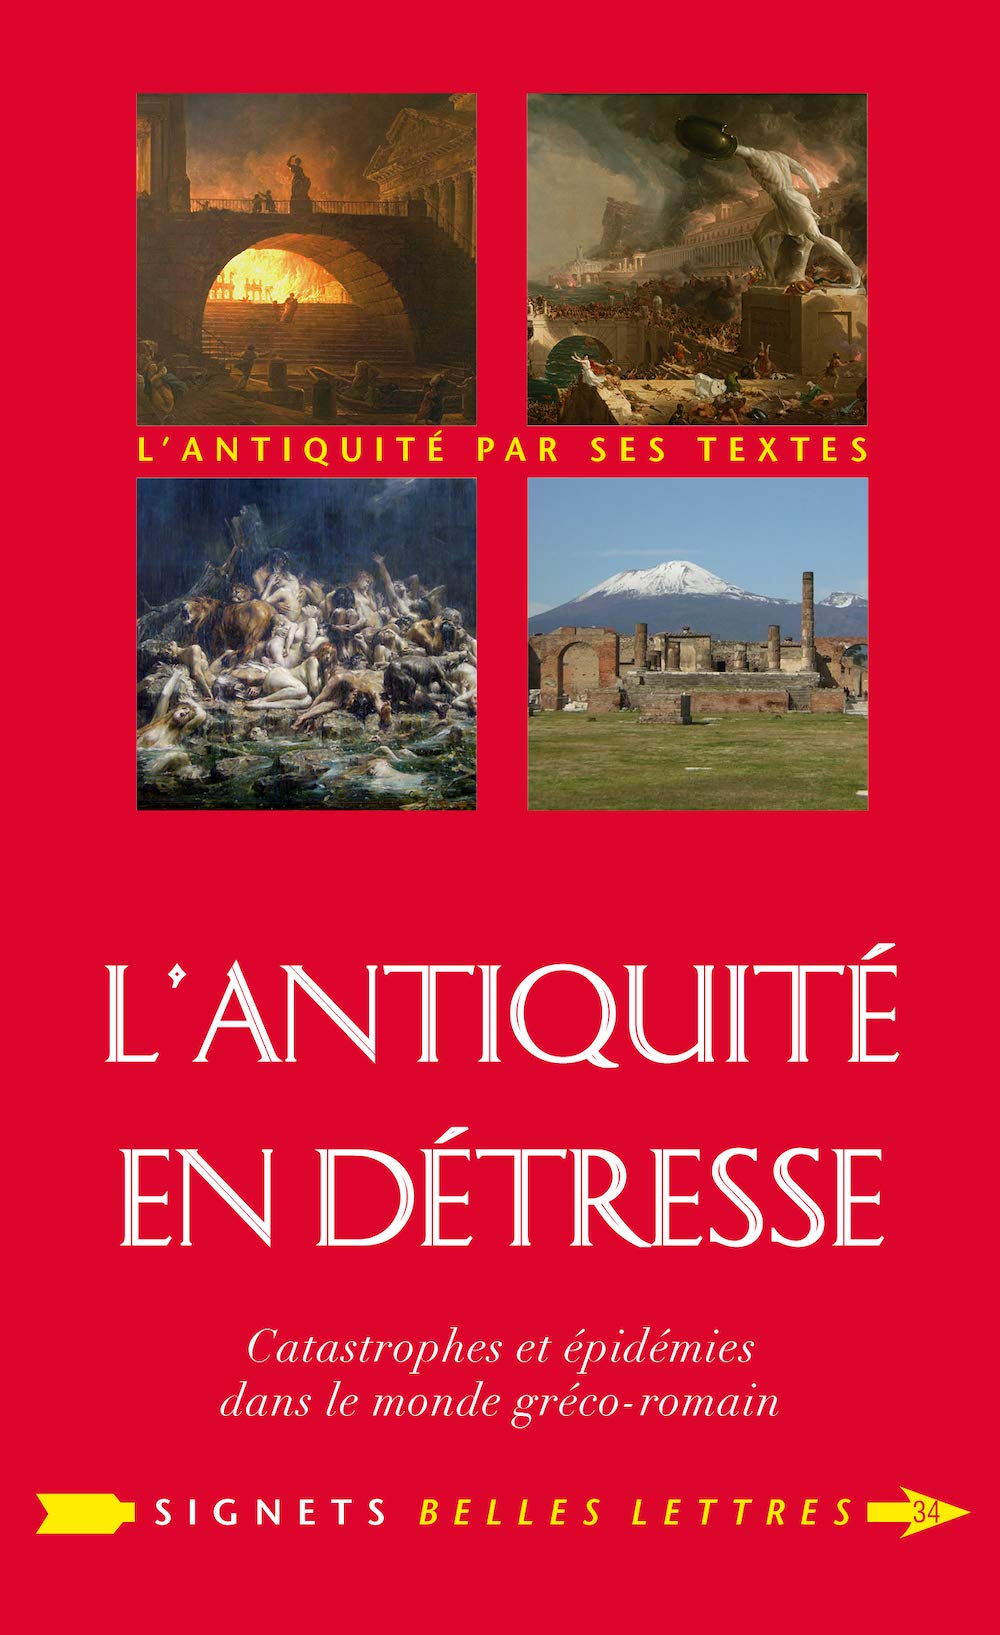 L'Antiquité en détresse. Catastrophes & épidémies dans le monde gréco-romain, 2021, 304 p.